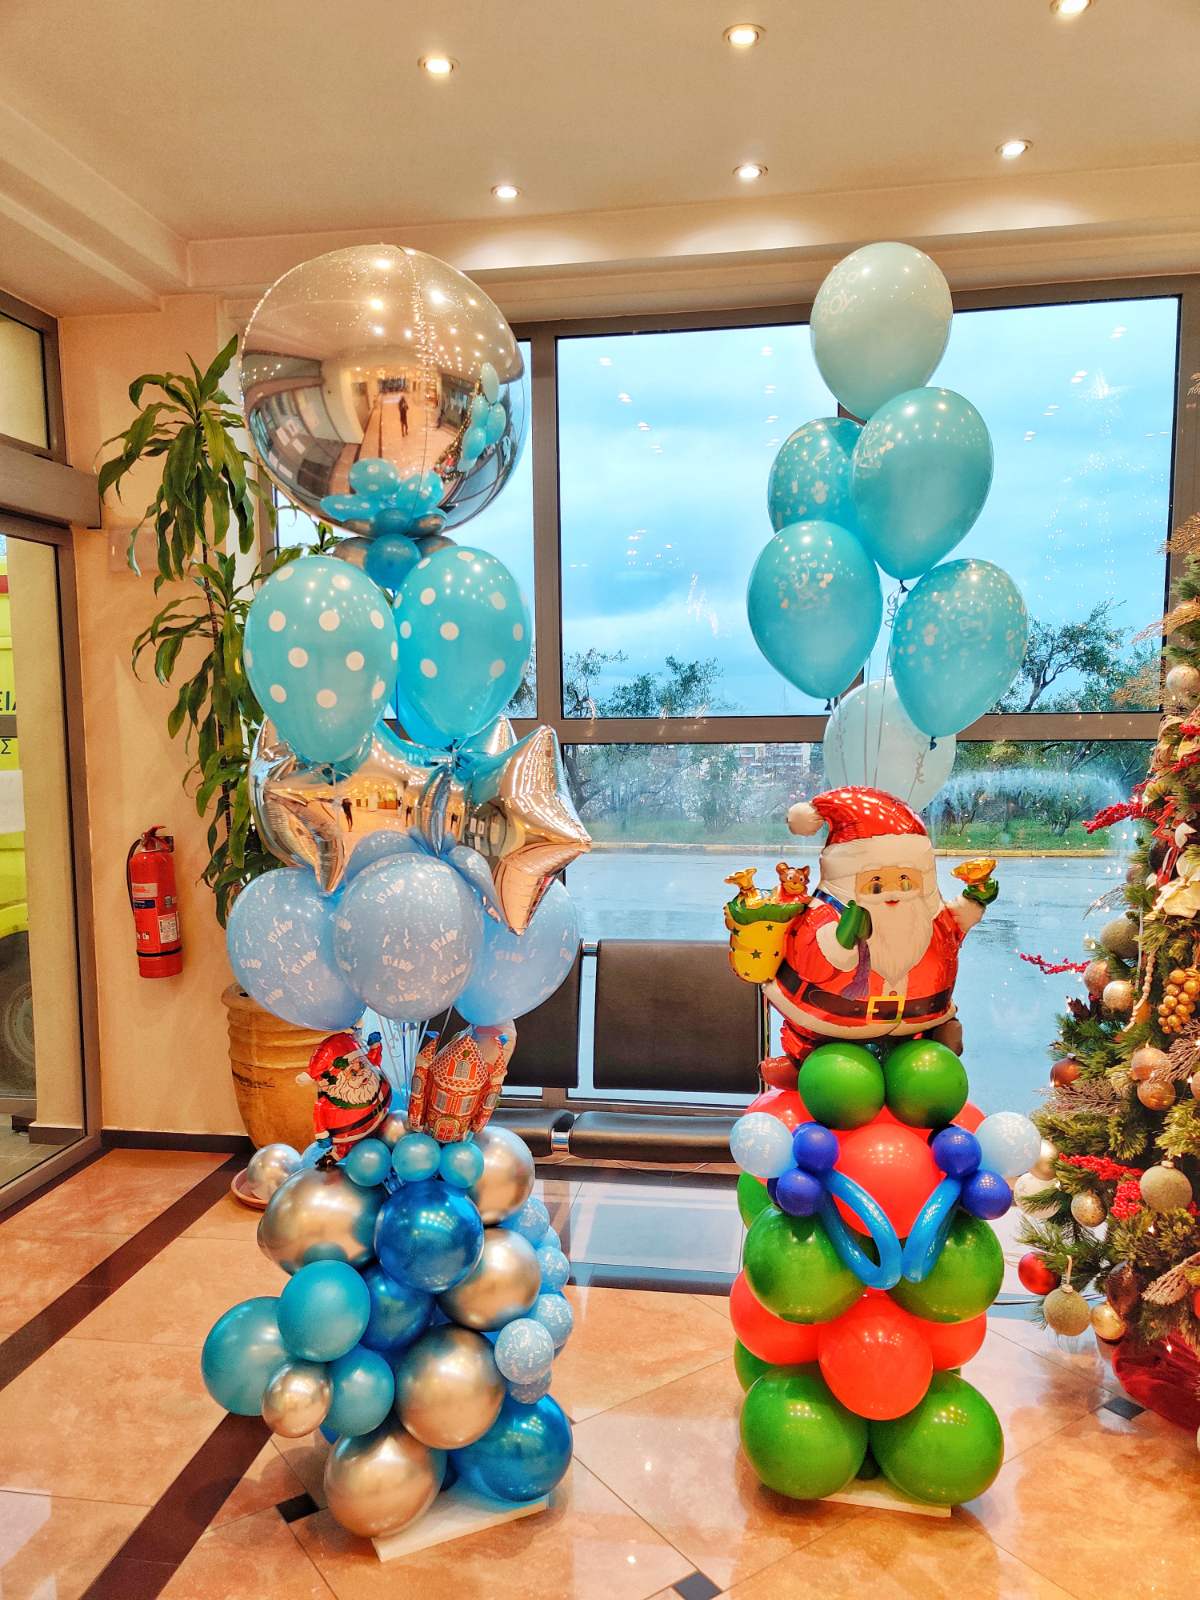 Μπαλόνια Άγιος Βασίλης και θέμα γέννηση για Χριστούγεννα σε μαιευτήριο